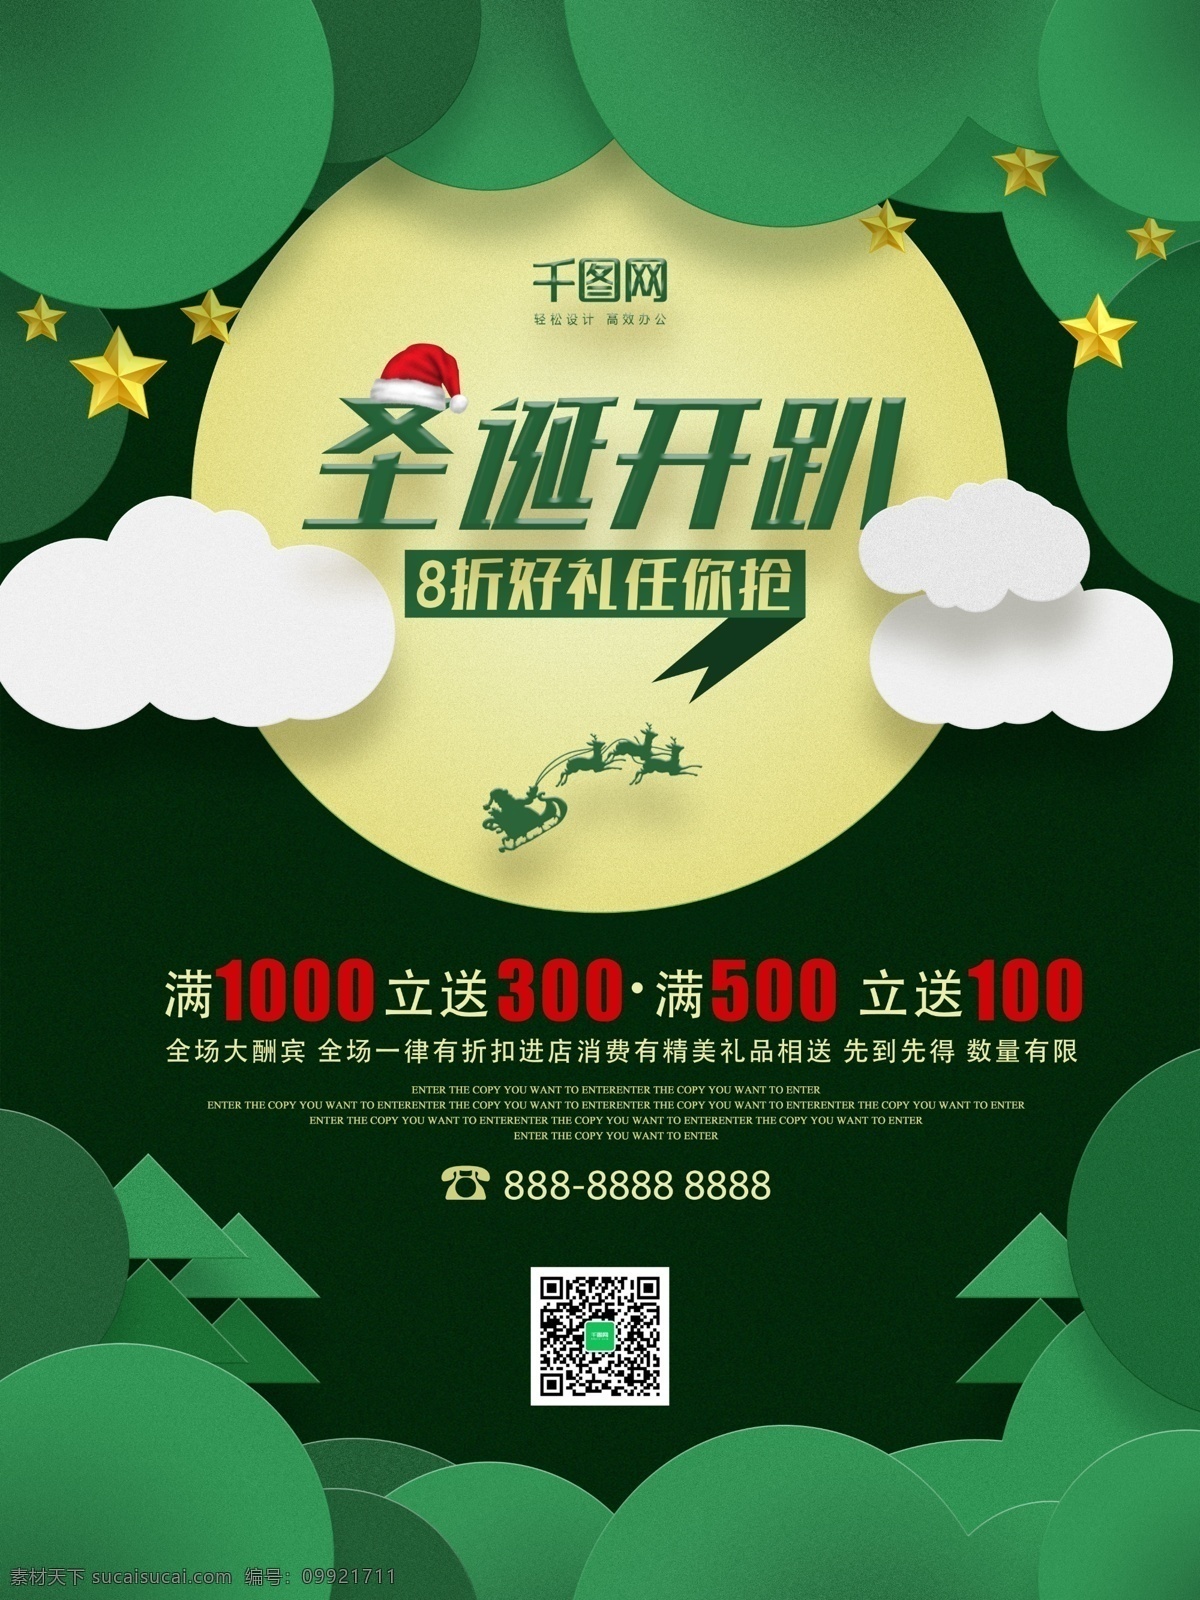 绿色 创意 图形 圣诞节 海报 色块 圣诞帽子 白云 星星 月亮 树木 三角形 促销 节日 西方